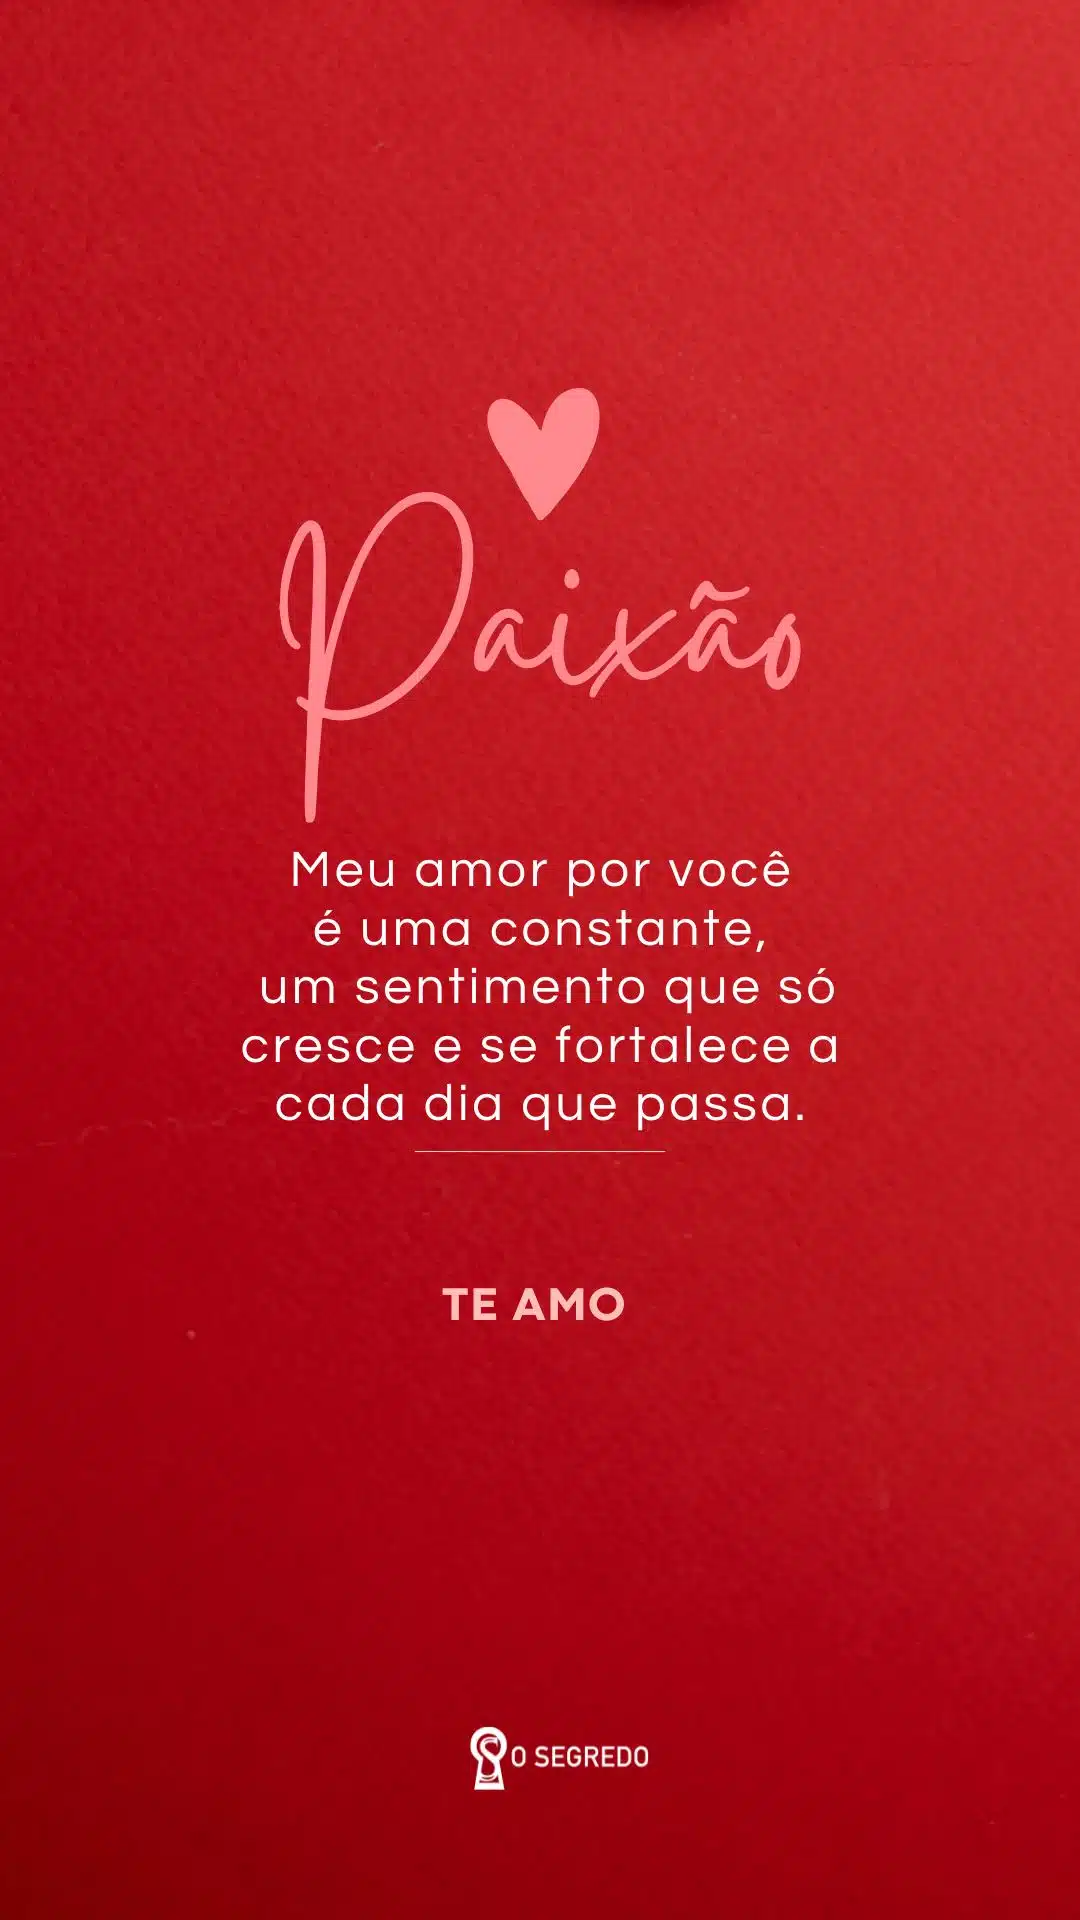 150 Frases De Amor Irresistíveis Para Fazer Seu Namorado Se Apaixonar Ainda Mais!